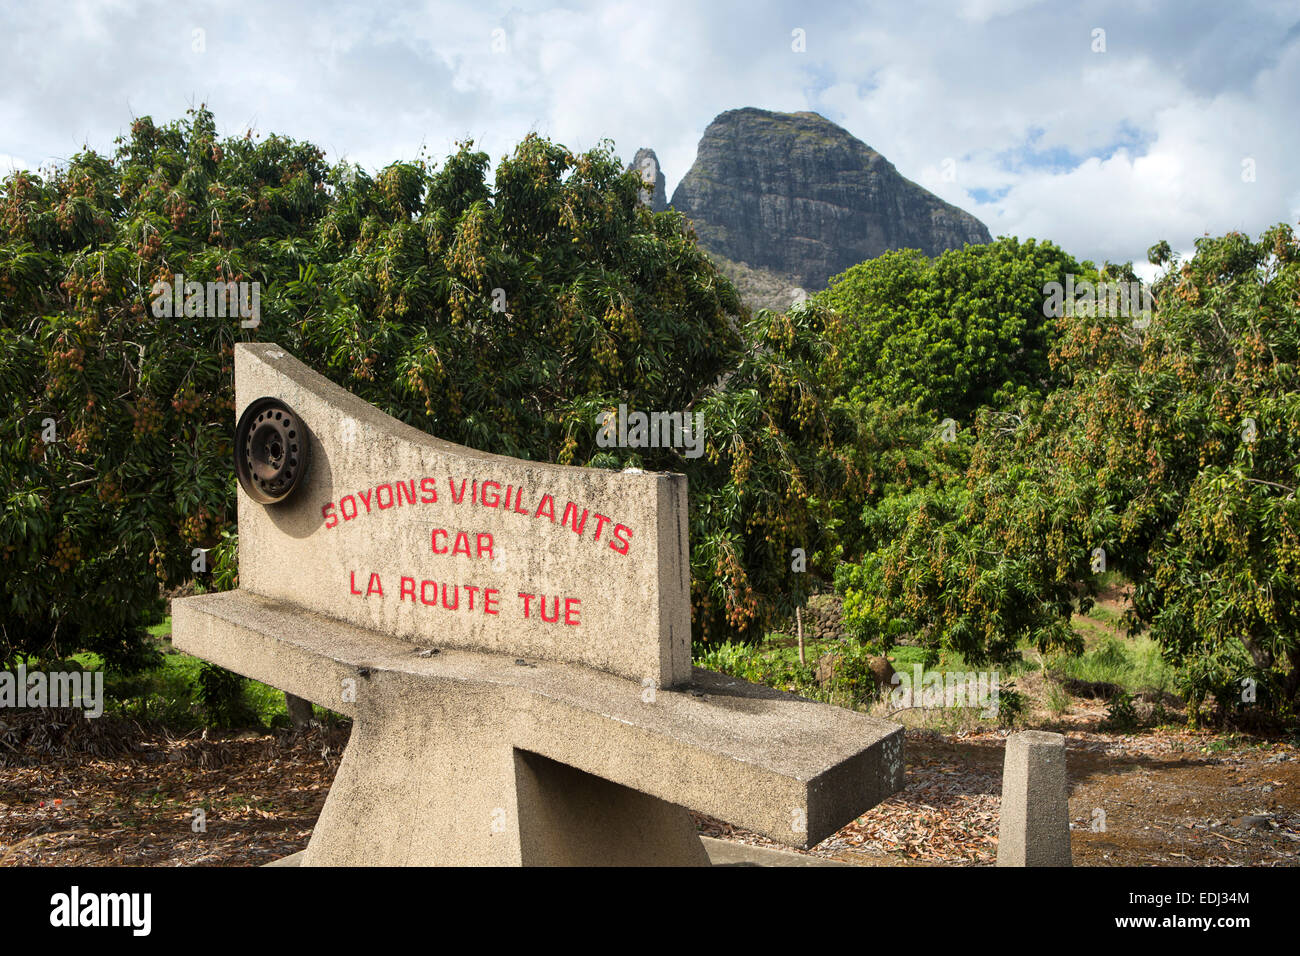 Mauritius, Quatre Bornes, montagne du Rempart and Trois Mamelles mountains beyond mango trees and safe driving sign Stock Photo